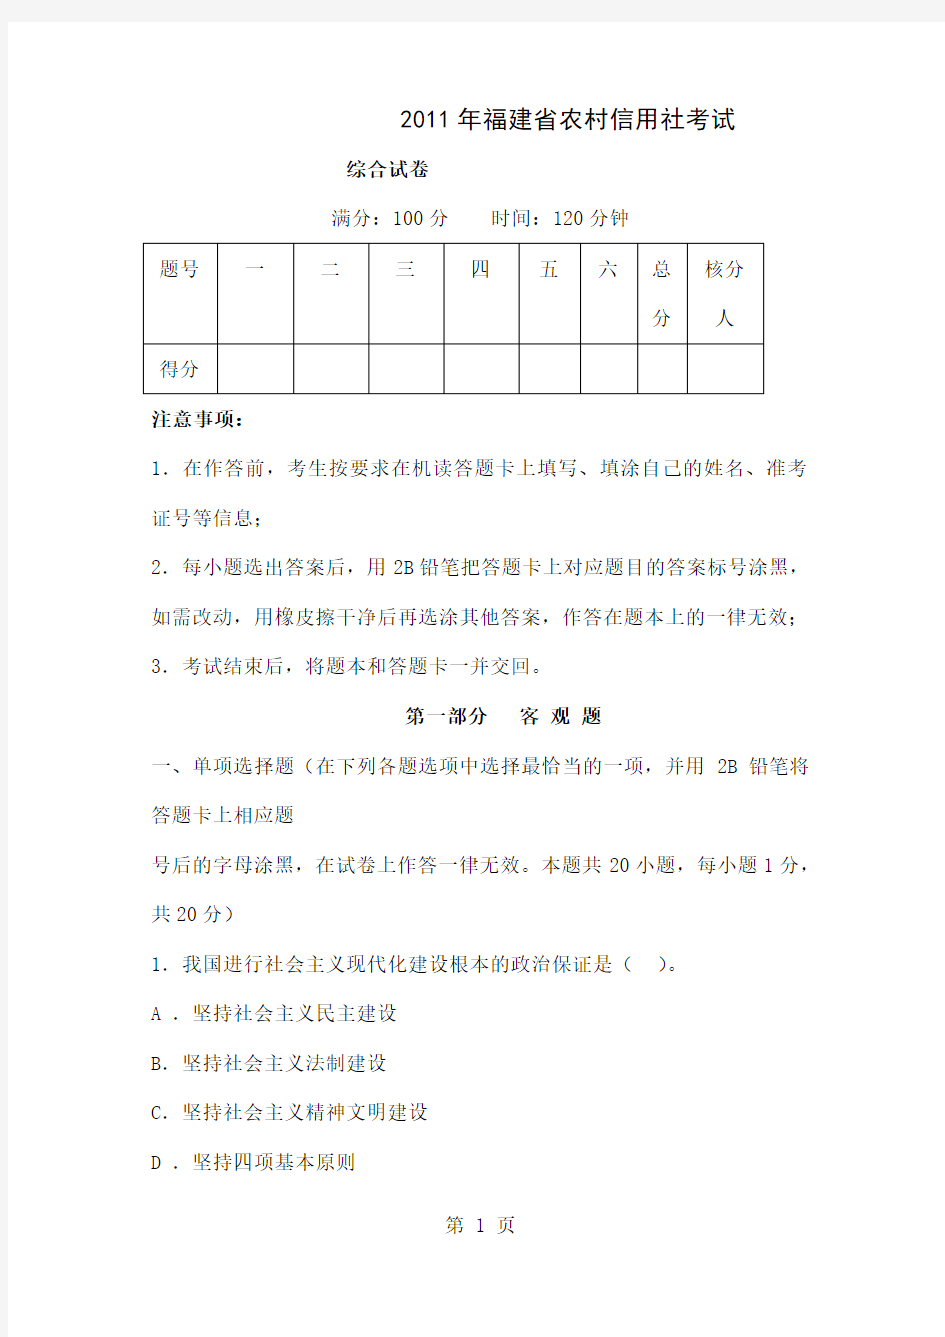 2019年福建省农村信用社考试综合真题共11页